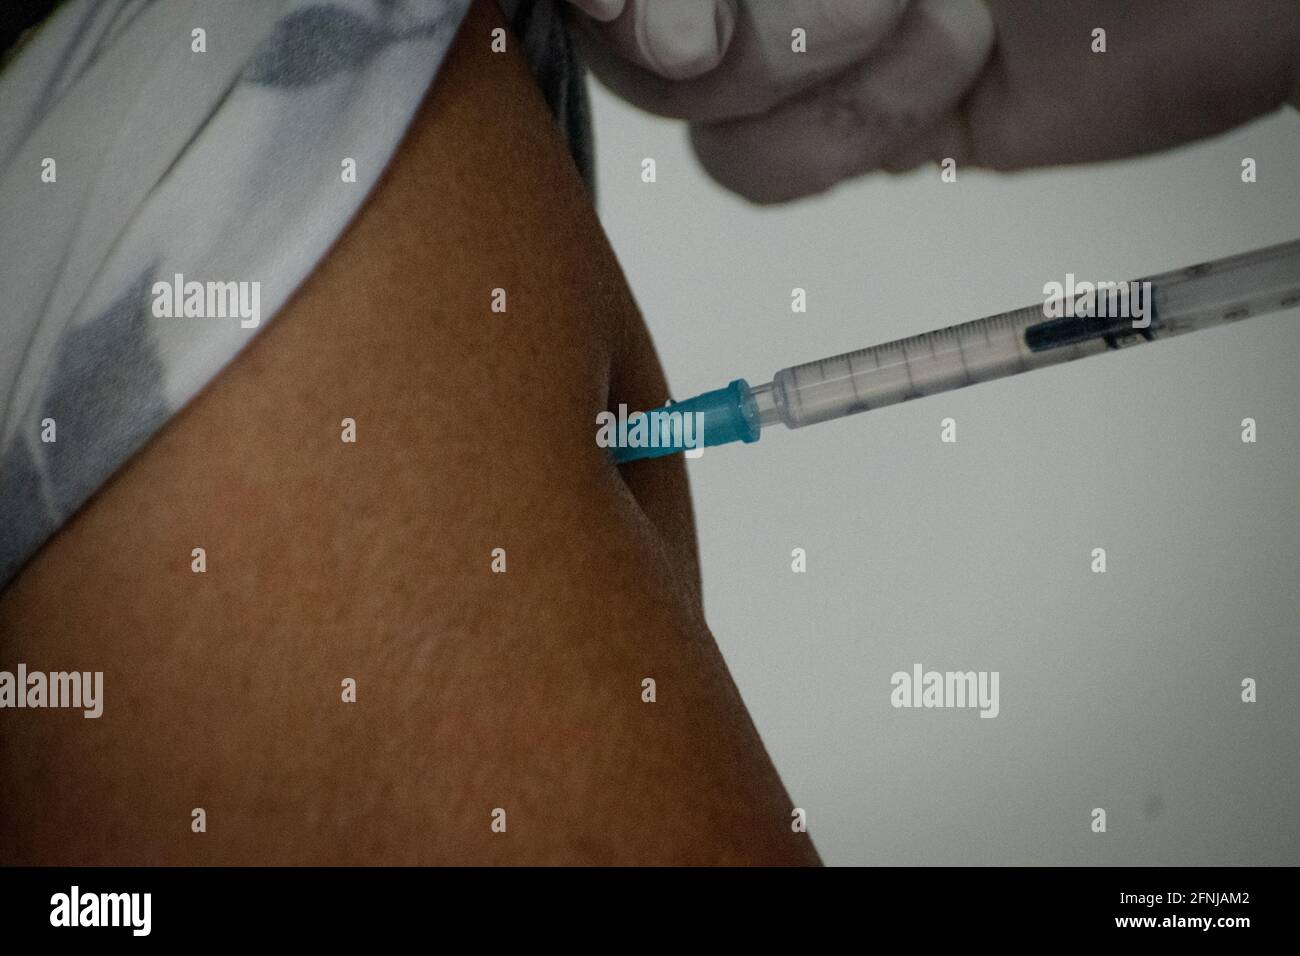 L'infermiera applica il vaccino Sinovac alla popolazione superiore a 65 per la prevenzione di Covid-19 in Ipiales Narino, Colombia il 29 marzo 2021 Foto Stock